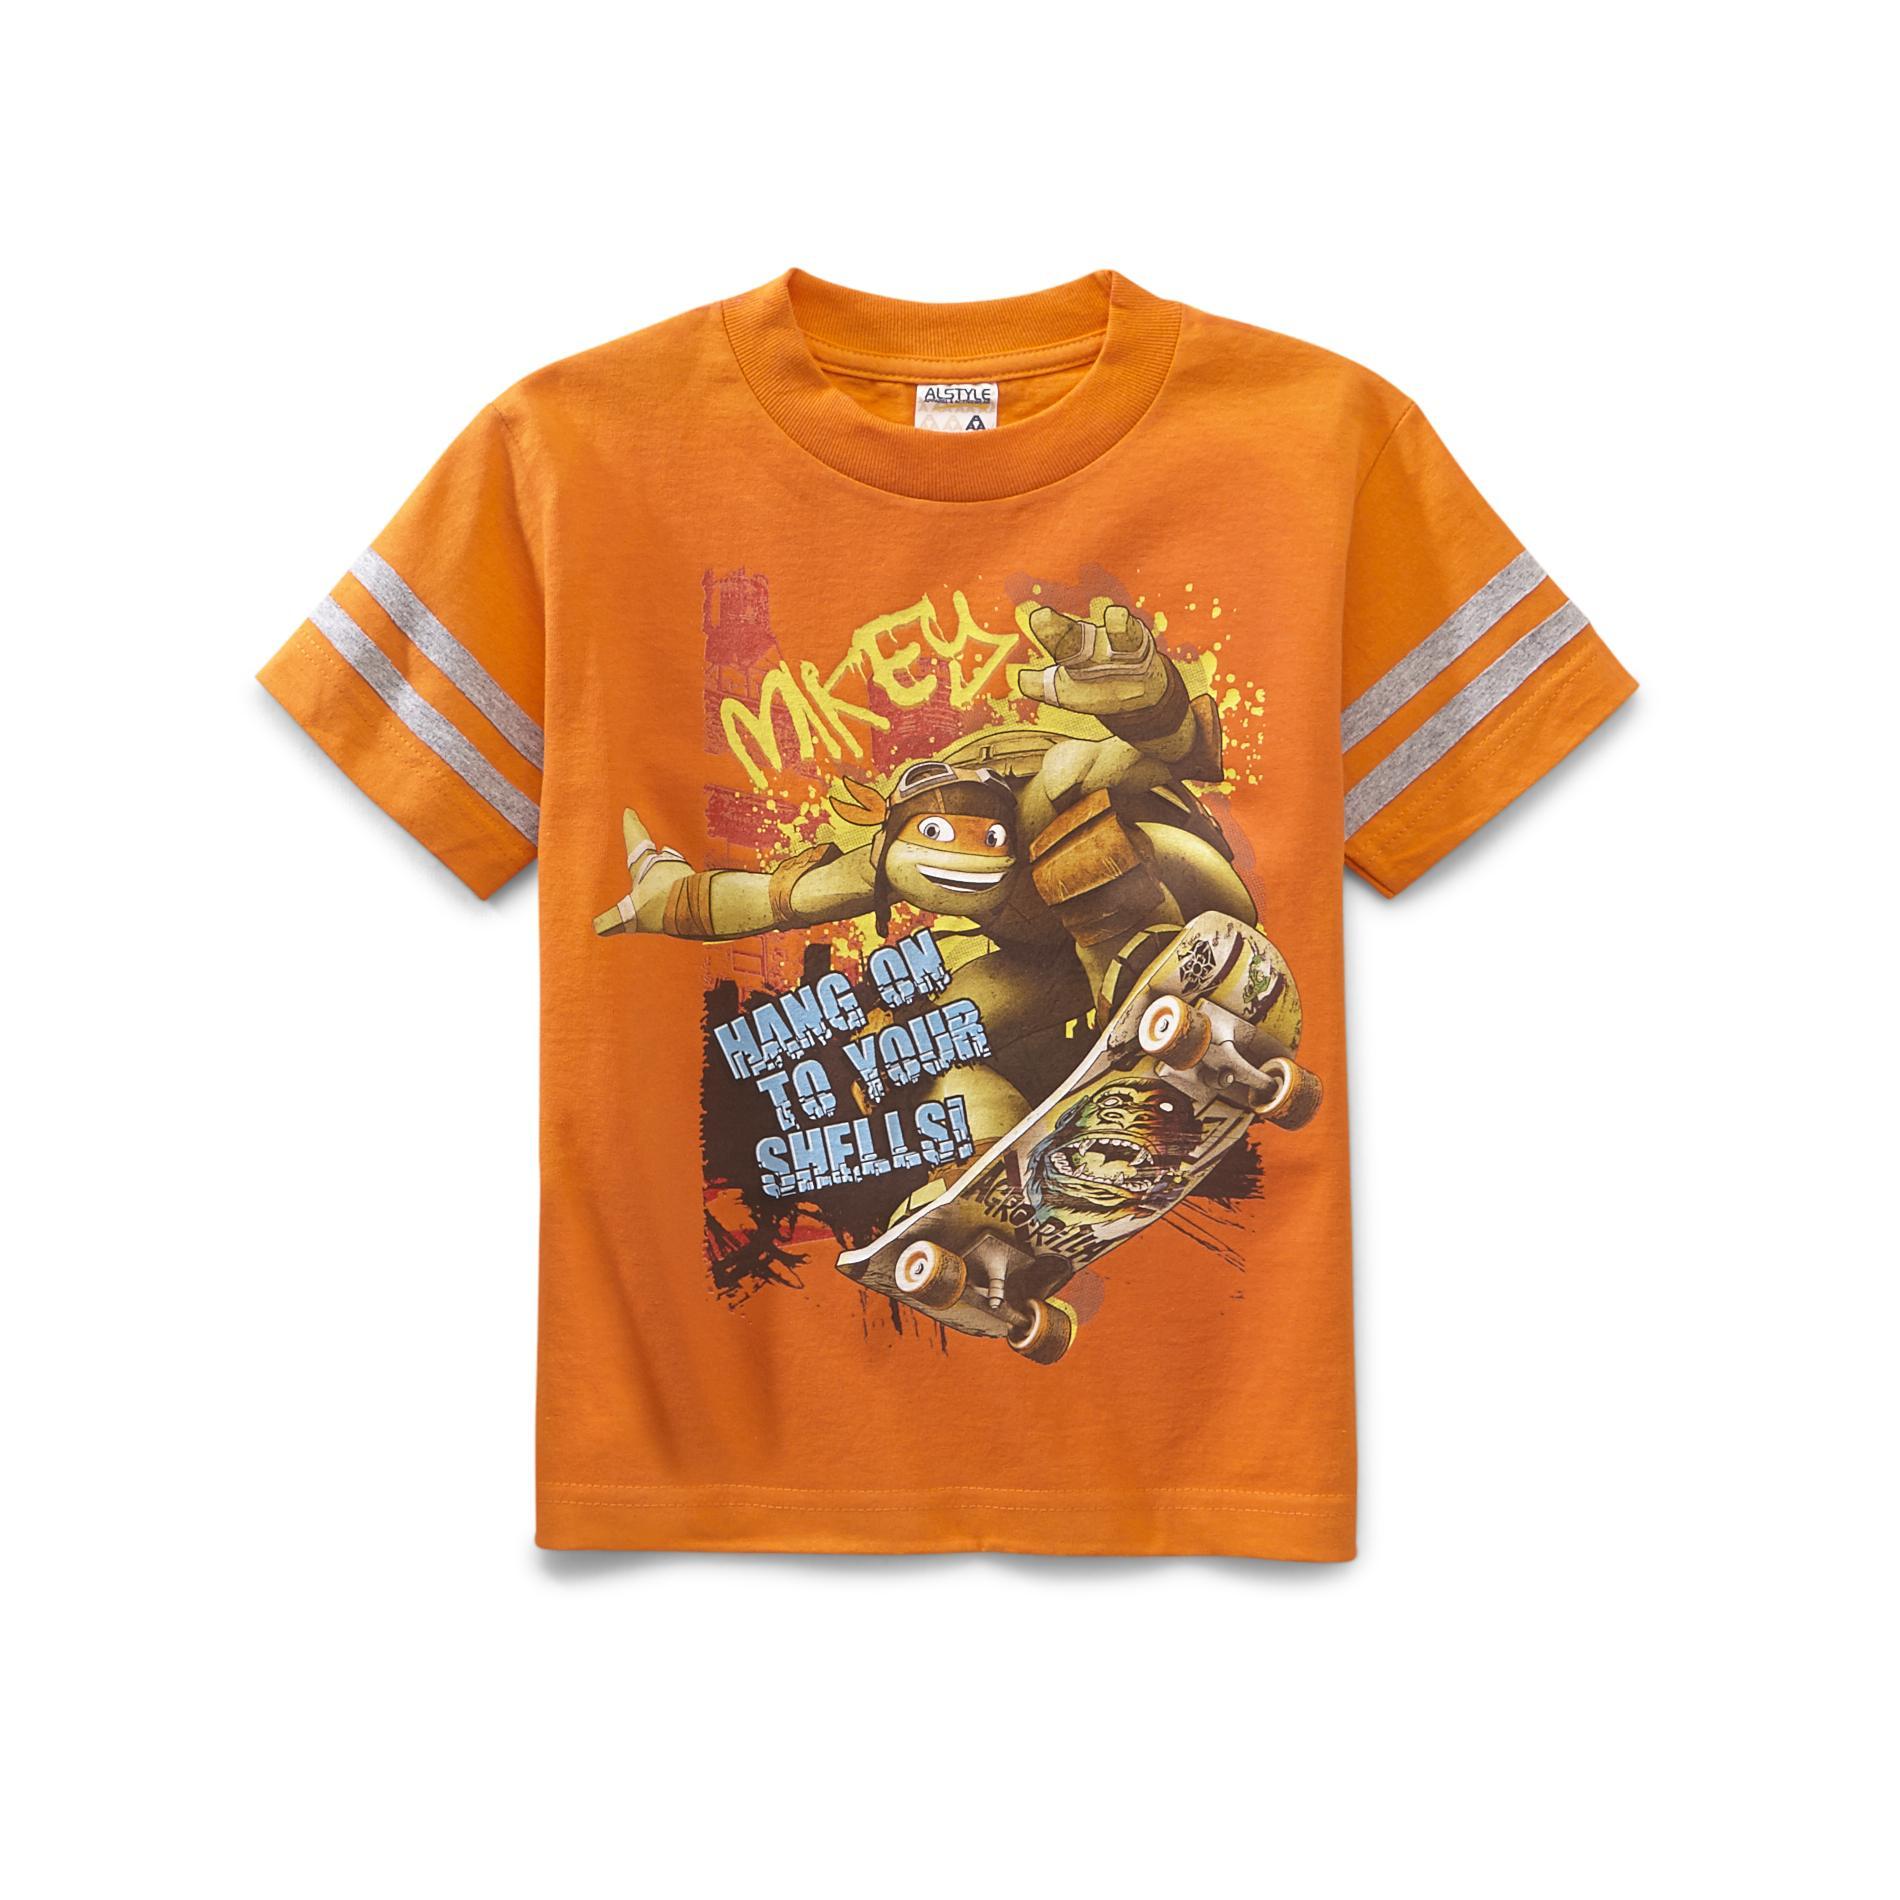 Nickelodeon Teenage Mutant Ninja Turtles Boy's Graphic T-Shirt - Mikey